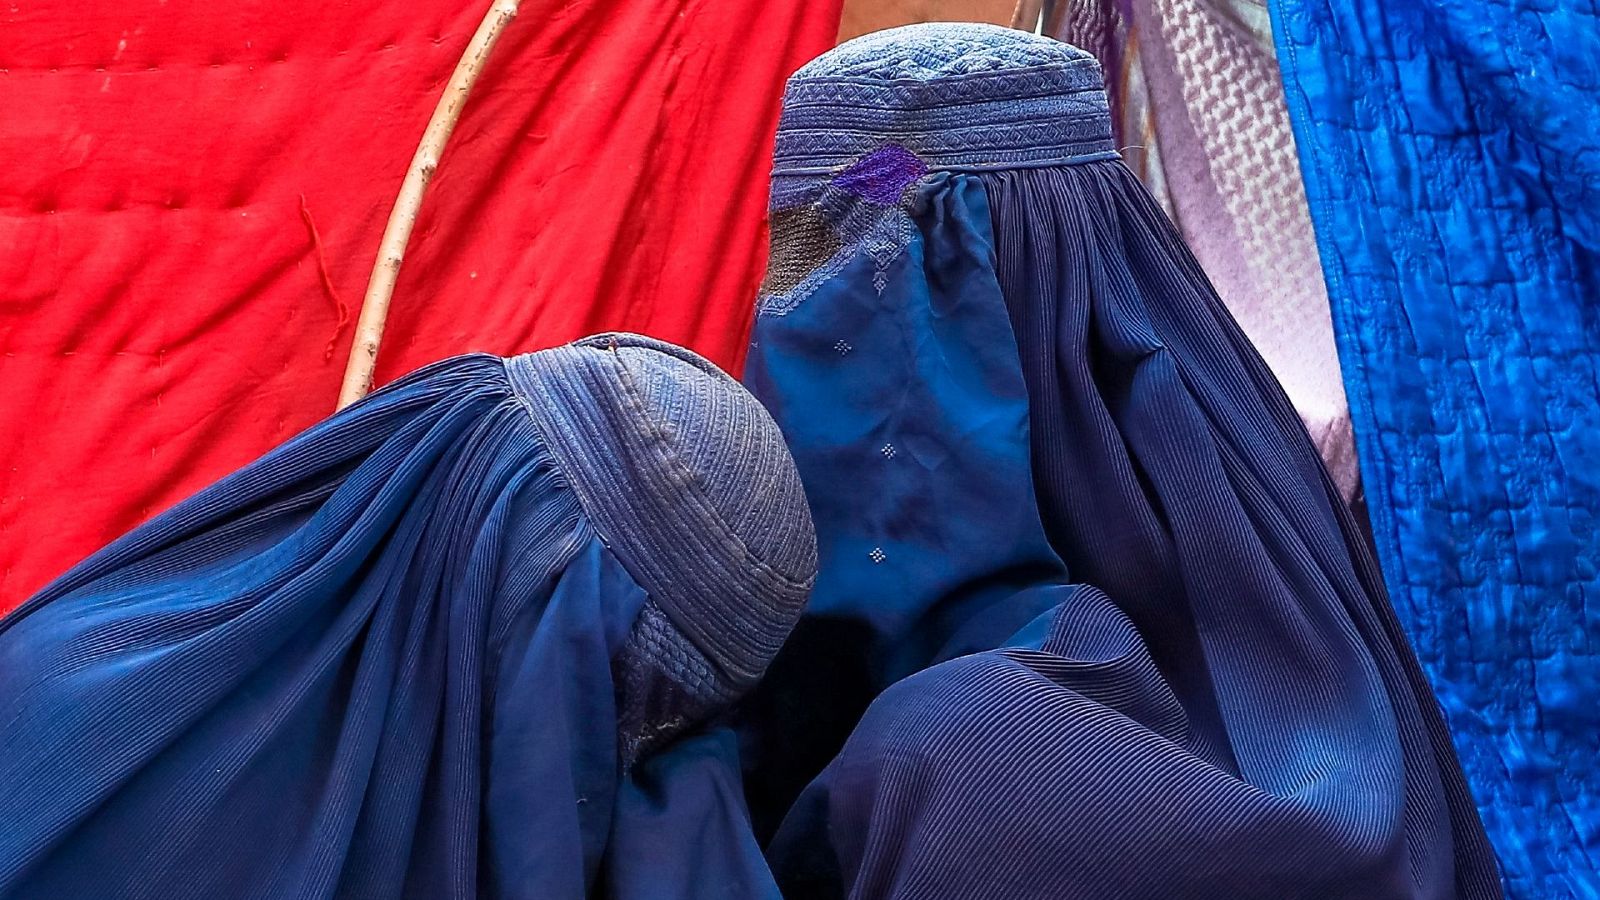 El sueño de ser una mujer deportista se apaga en Afganistán